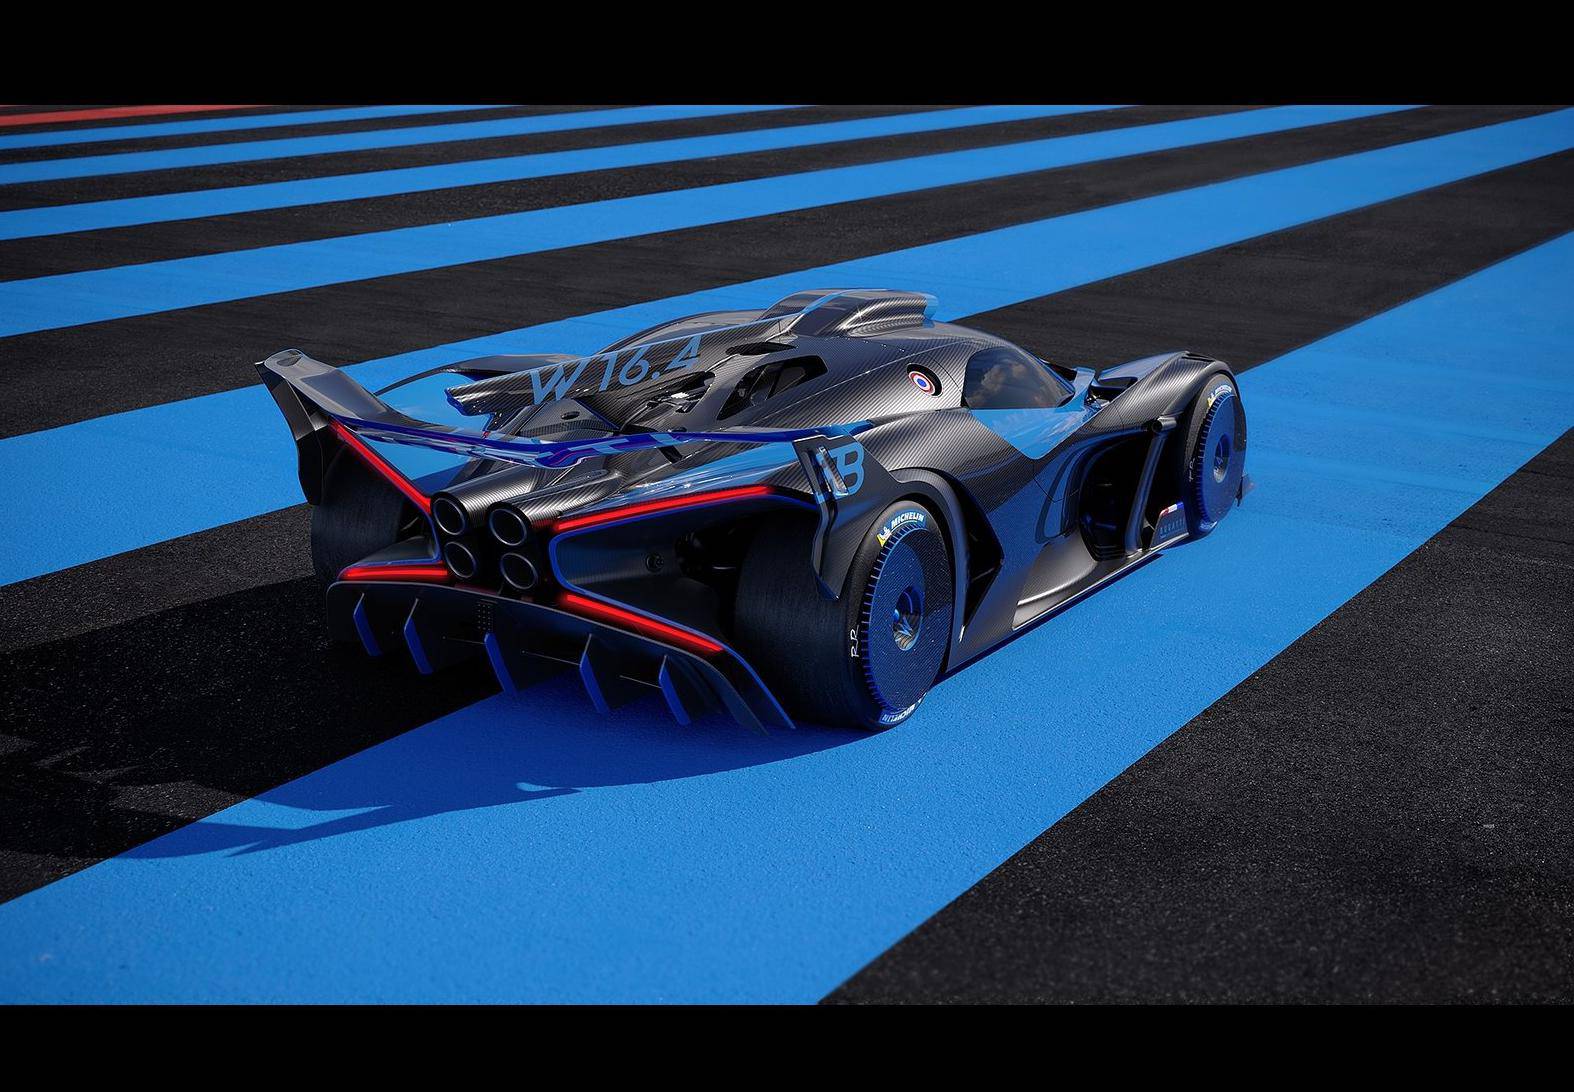 Nevjerojatni Bugatti Bolide s 1850 KS je brži i od Formule 1